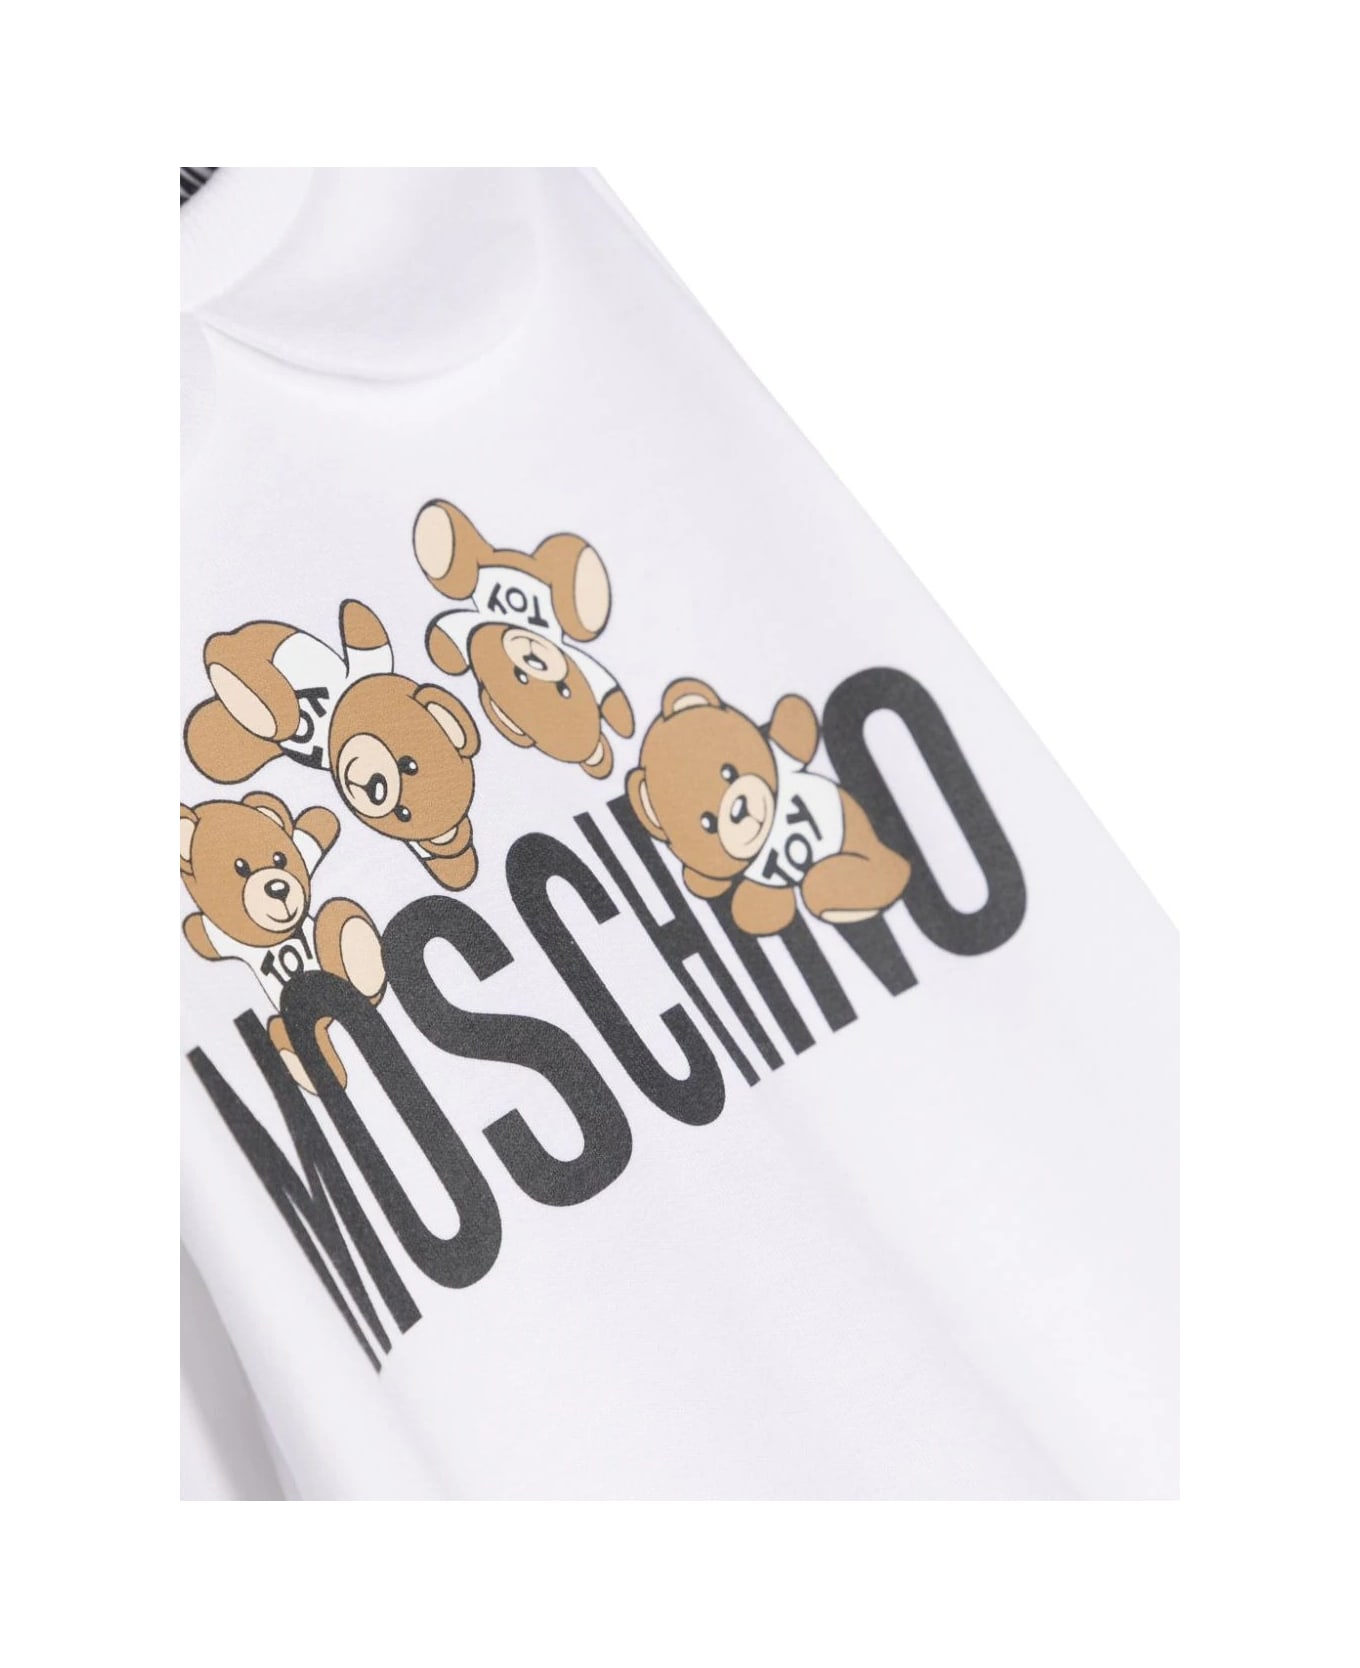 Moschino White Pyjamas With Moschino Teddy Friends Print - White ボディスーツ＆セットアップ